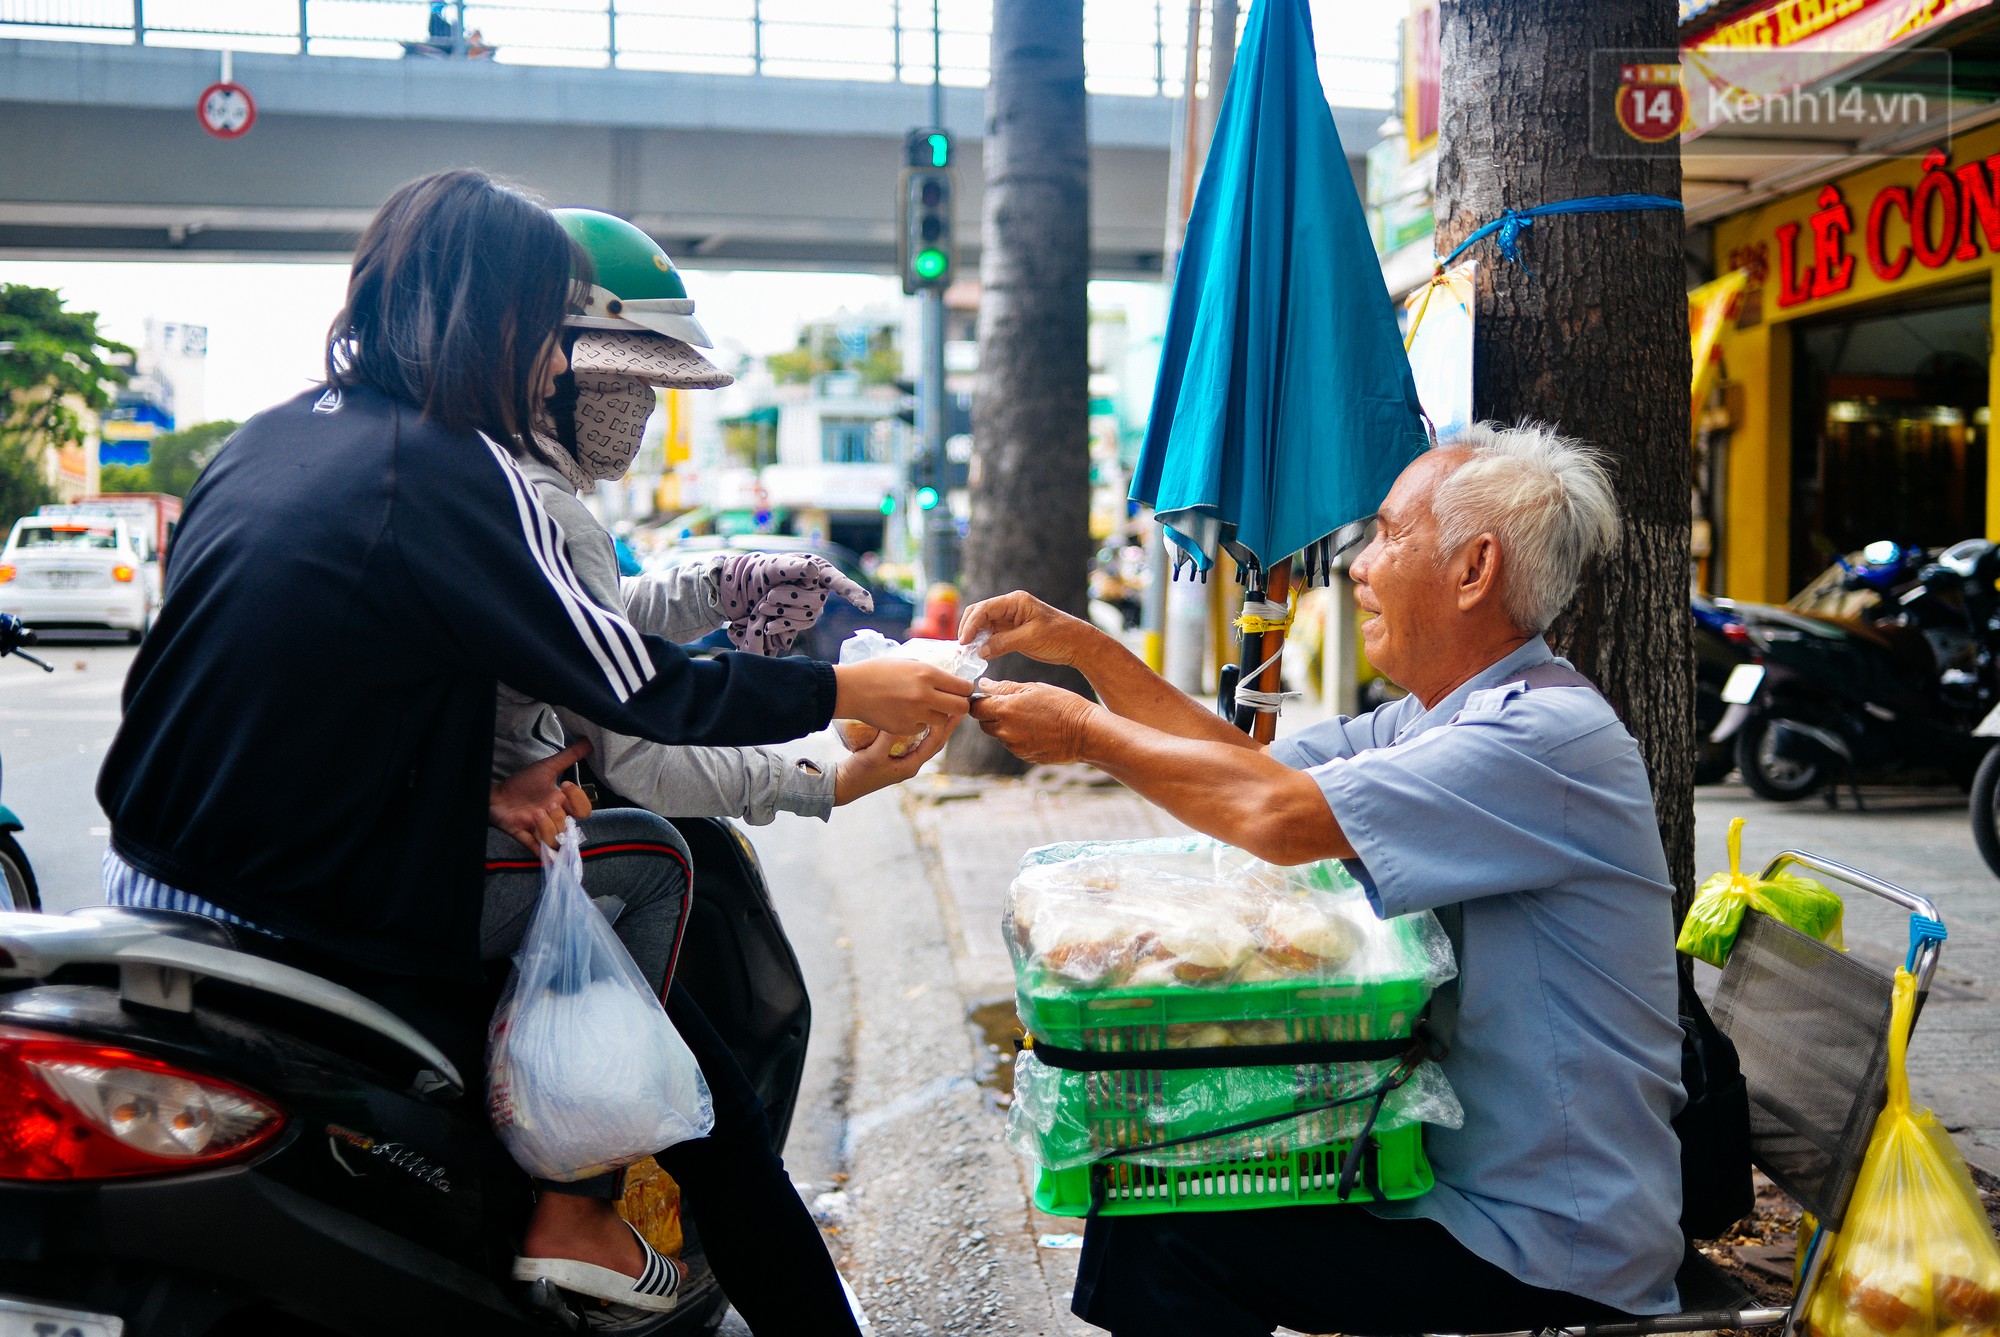 Chuyện tình chưa kể của ông lão mù bán bánh thuẫn ở Sài Gòn: Tui nhỏ hơn vợ 2 tuổi, mà nói chuyện dễ mến nên bả ưng tui! - Ảnh 9.